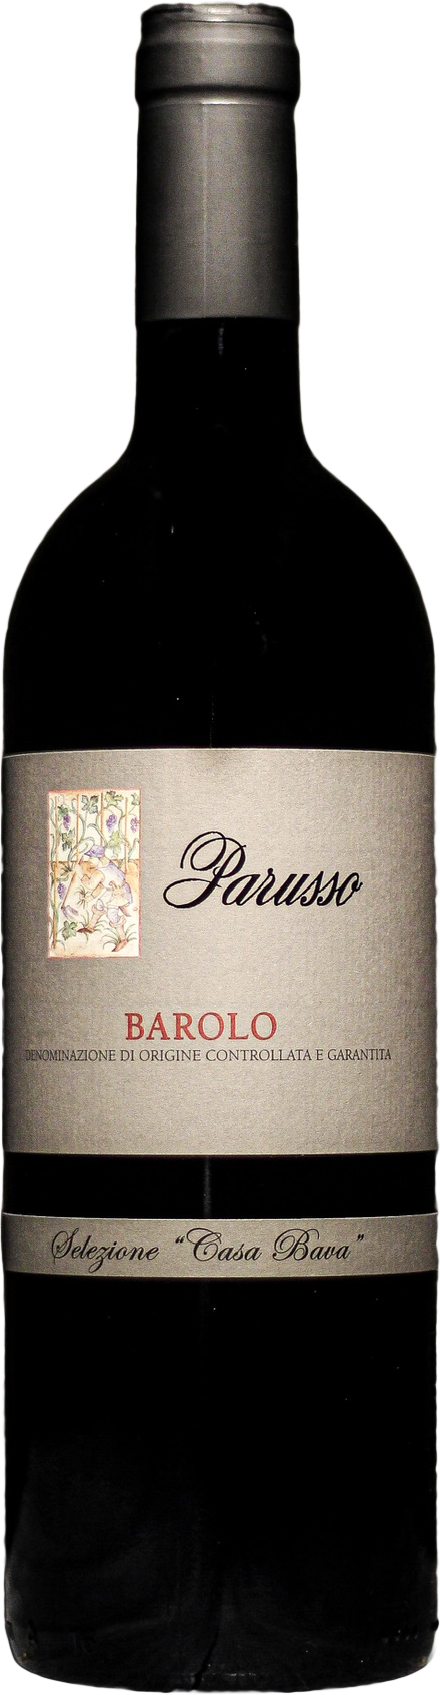 Barolo Parusso